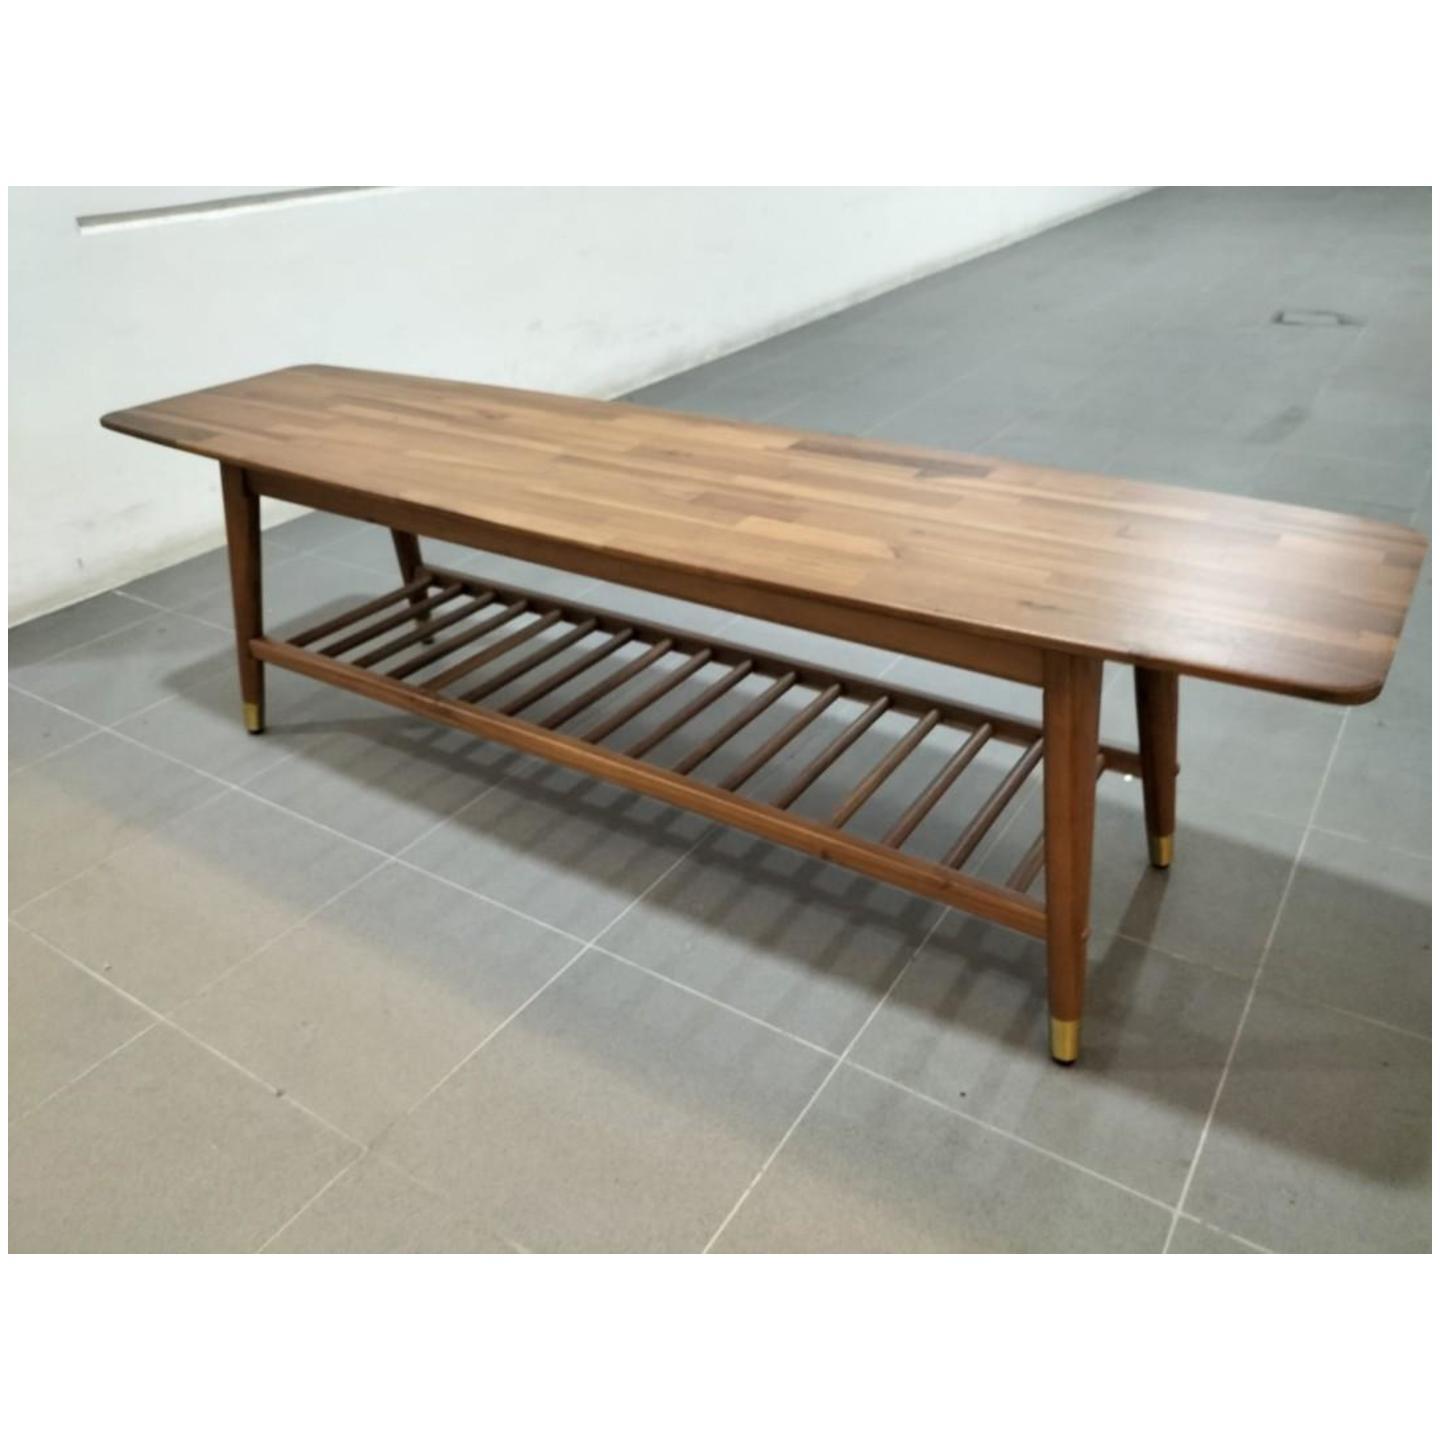 SYEKHO Wooden Dining Bench with Base Shelf